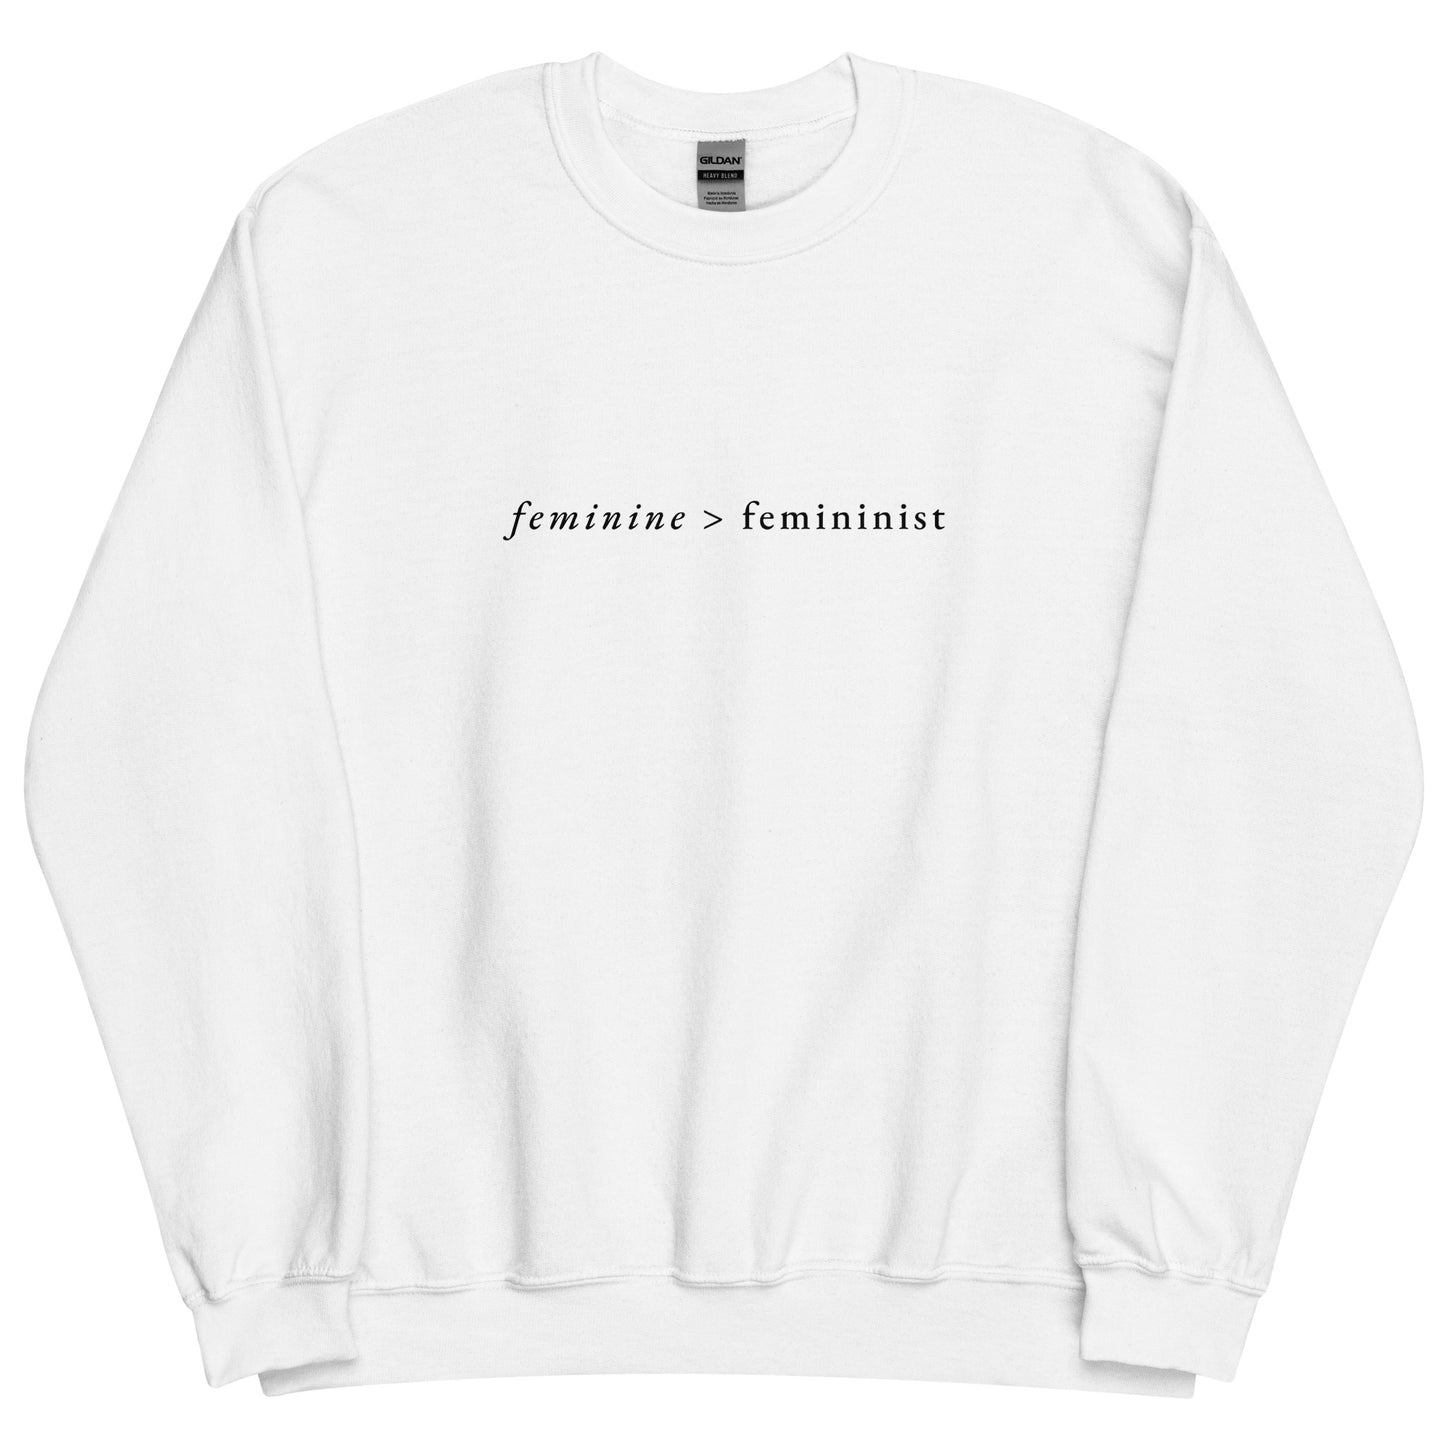 Feminine > Feminist White Sweatshirt